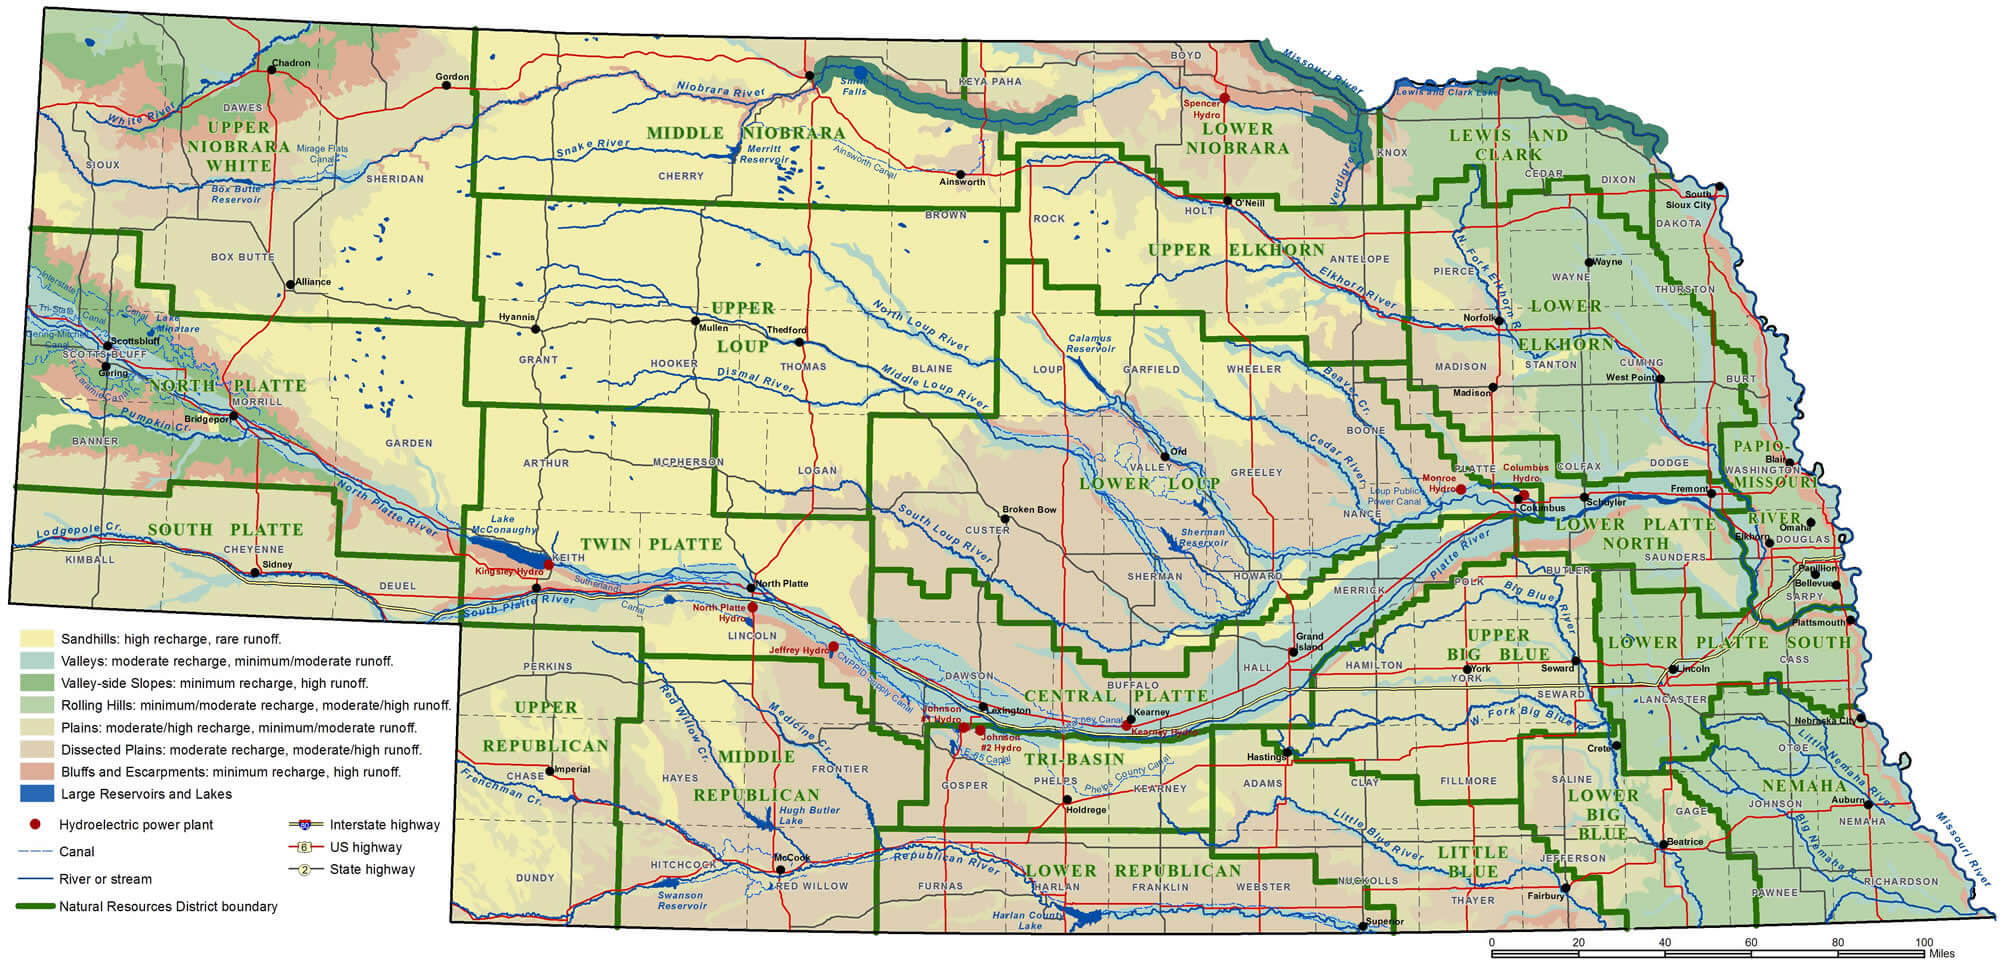 Nebraska State Map